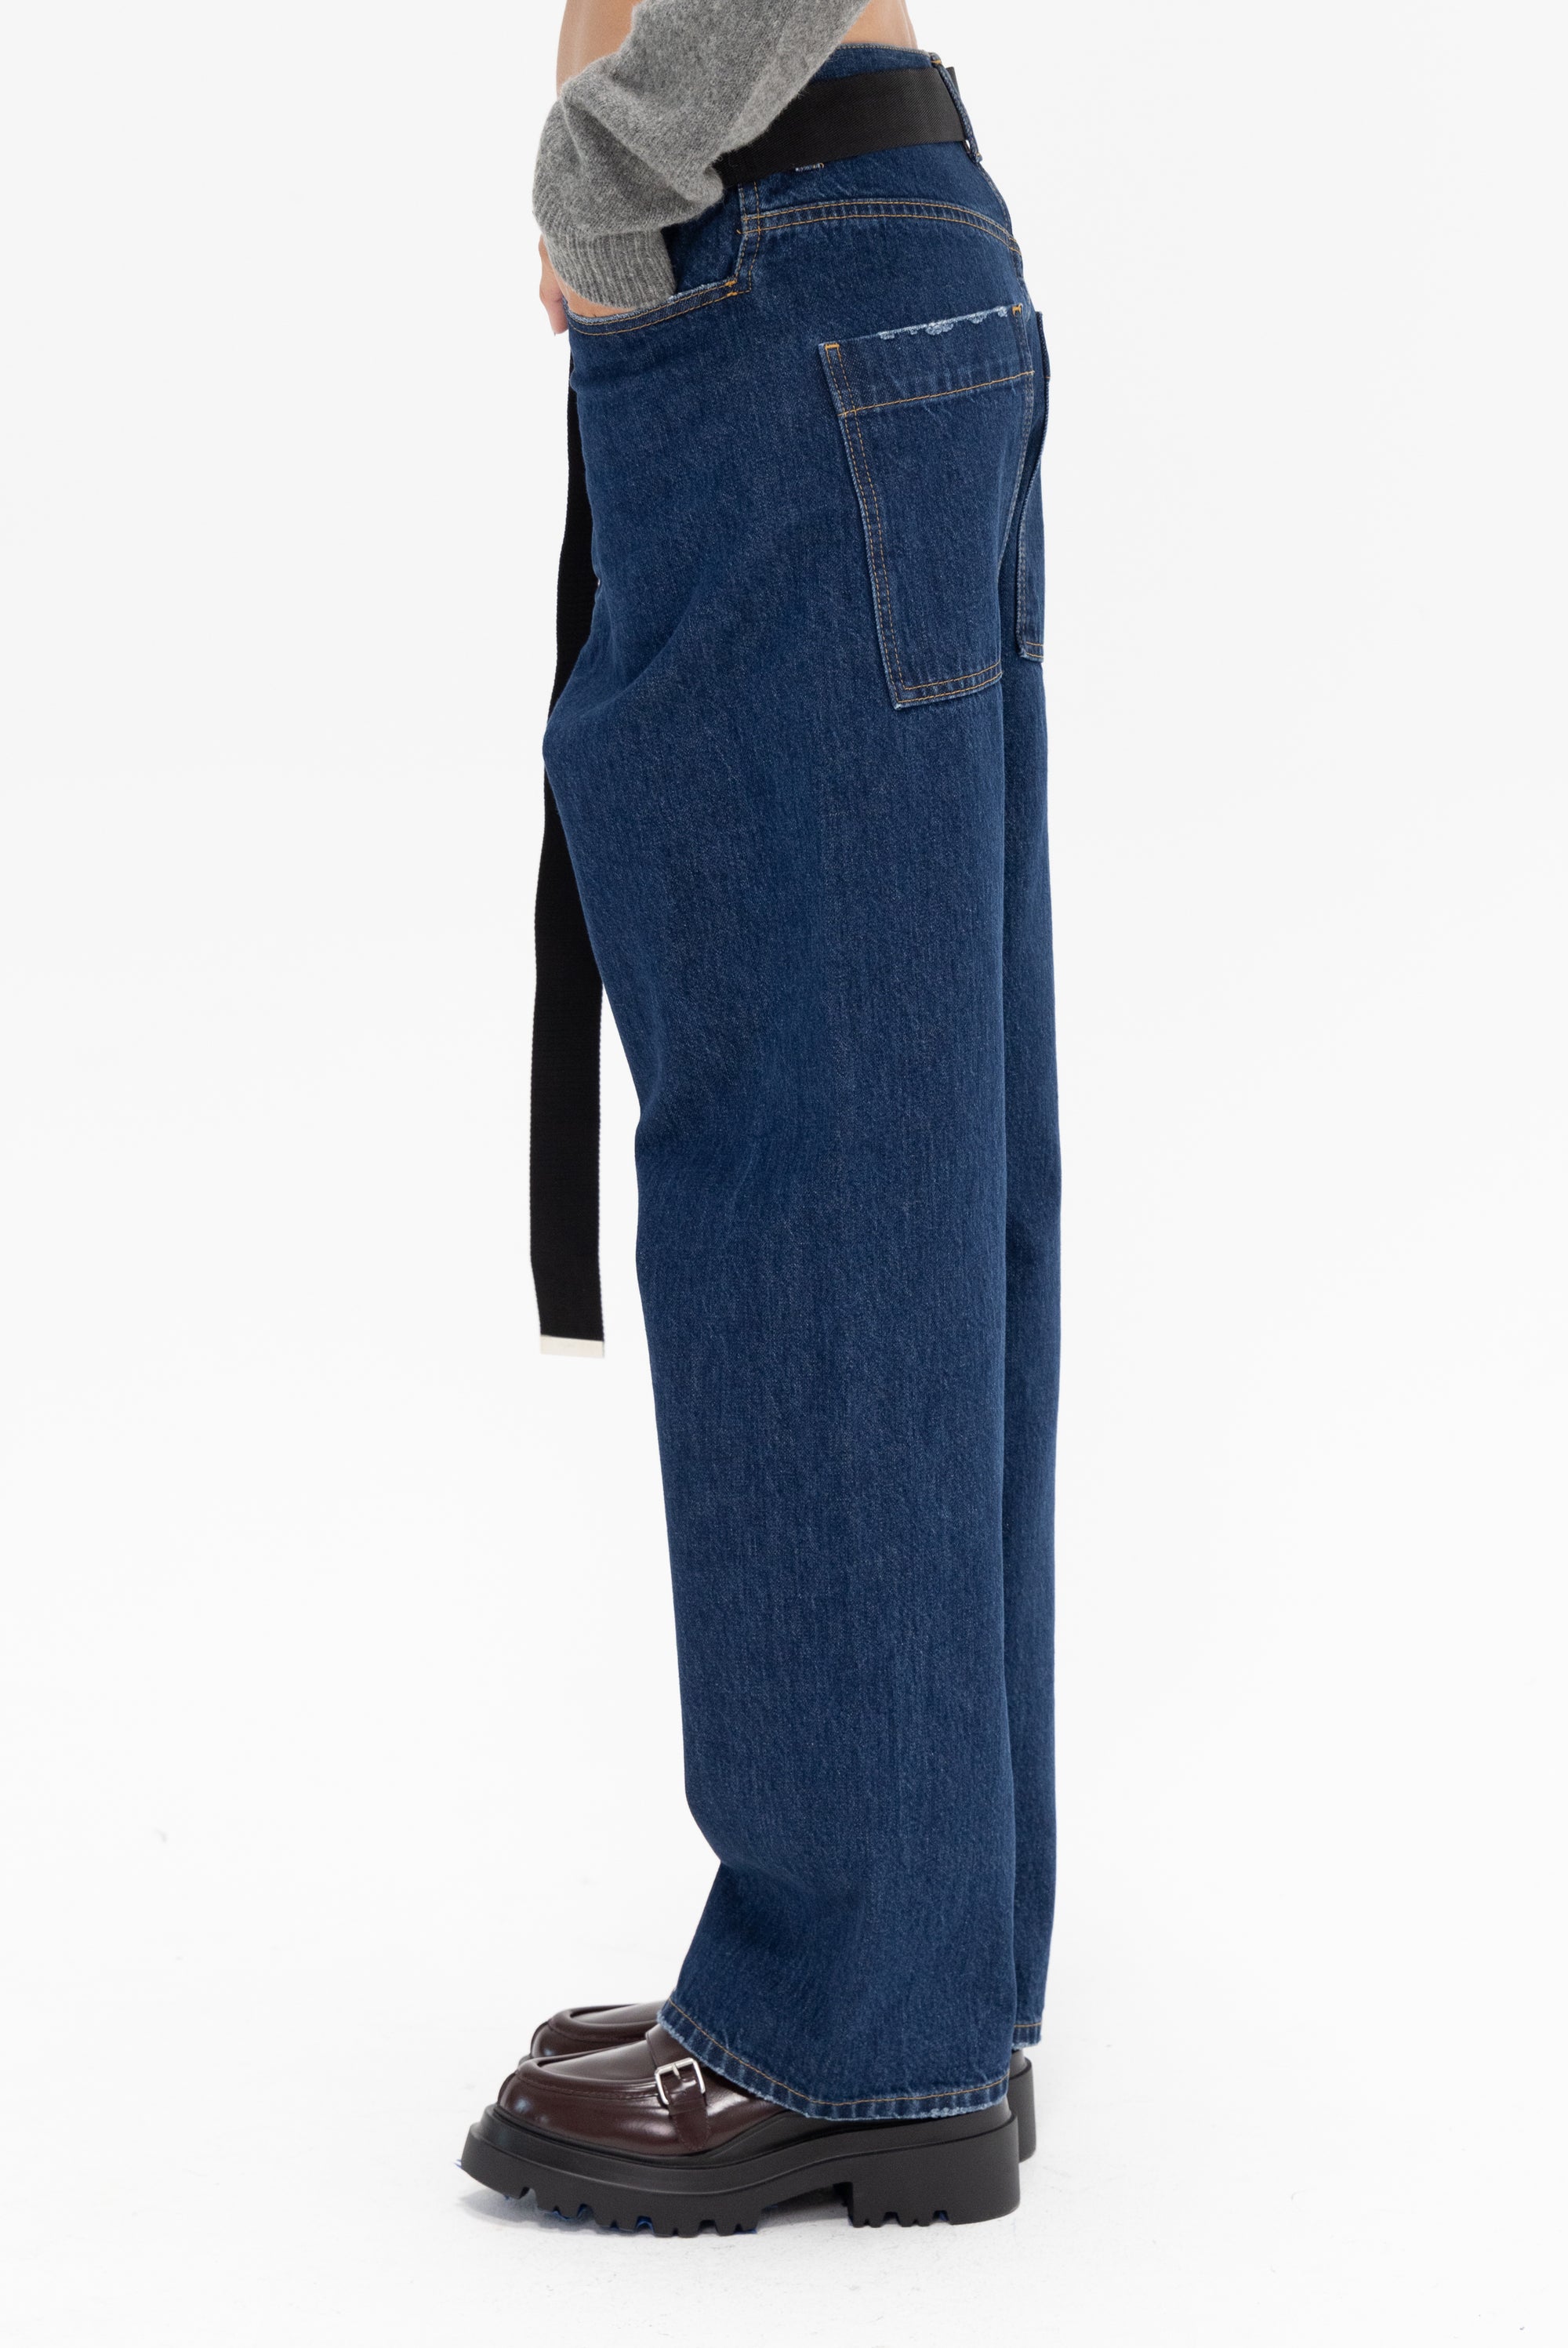 PLAN C - Wide Leg Black Belted Jeans, Denim